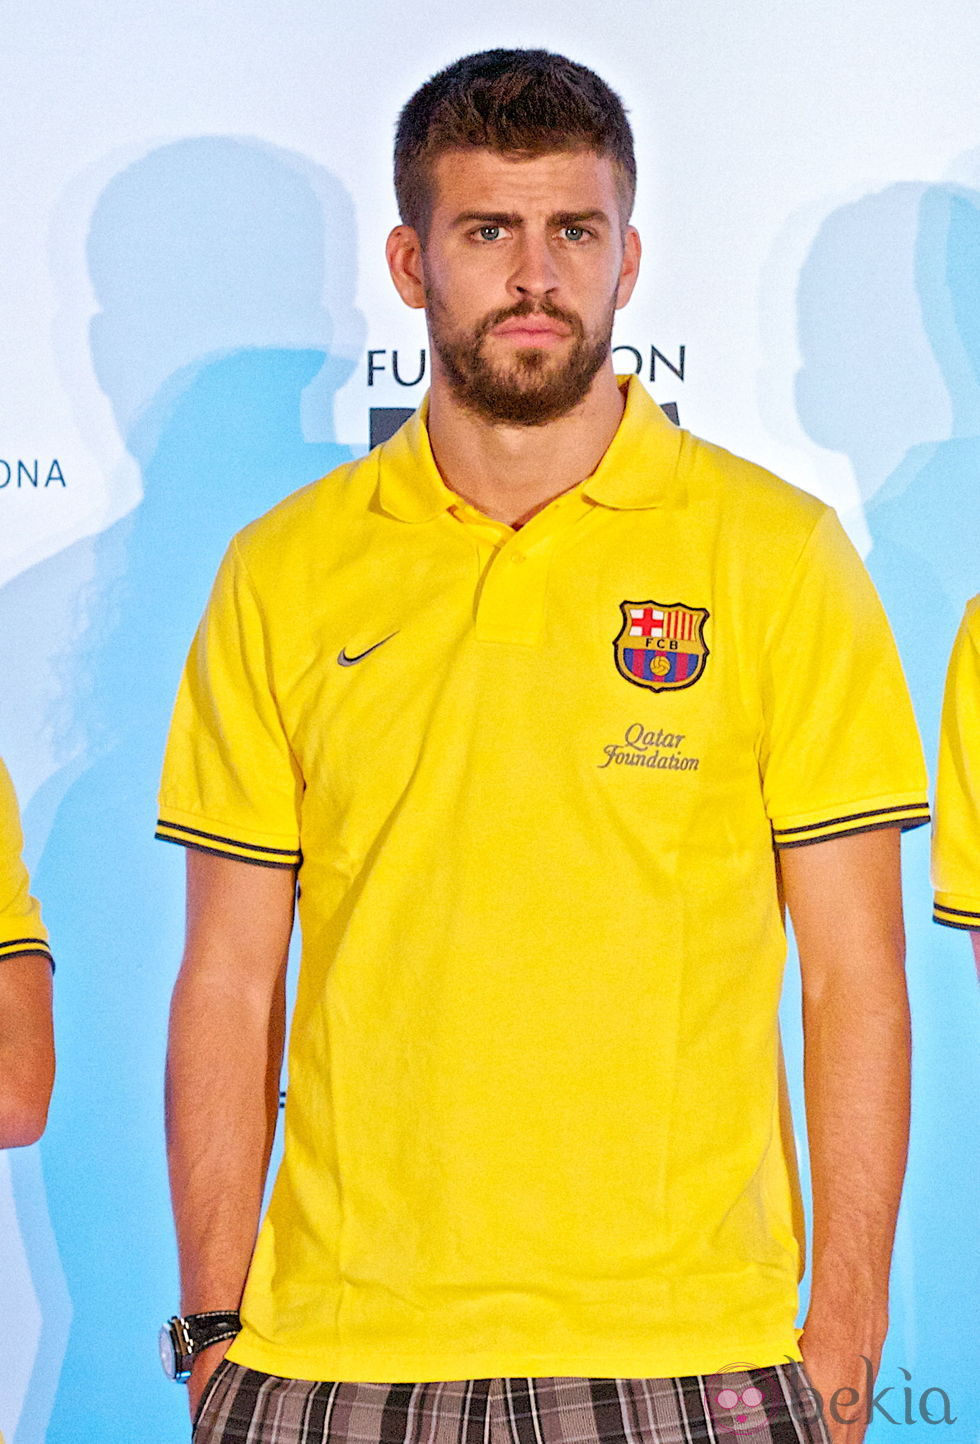 Gerard Piqué en el acto de alianza entre el Barça y Pies Descalzos en Miami